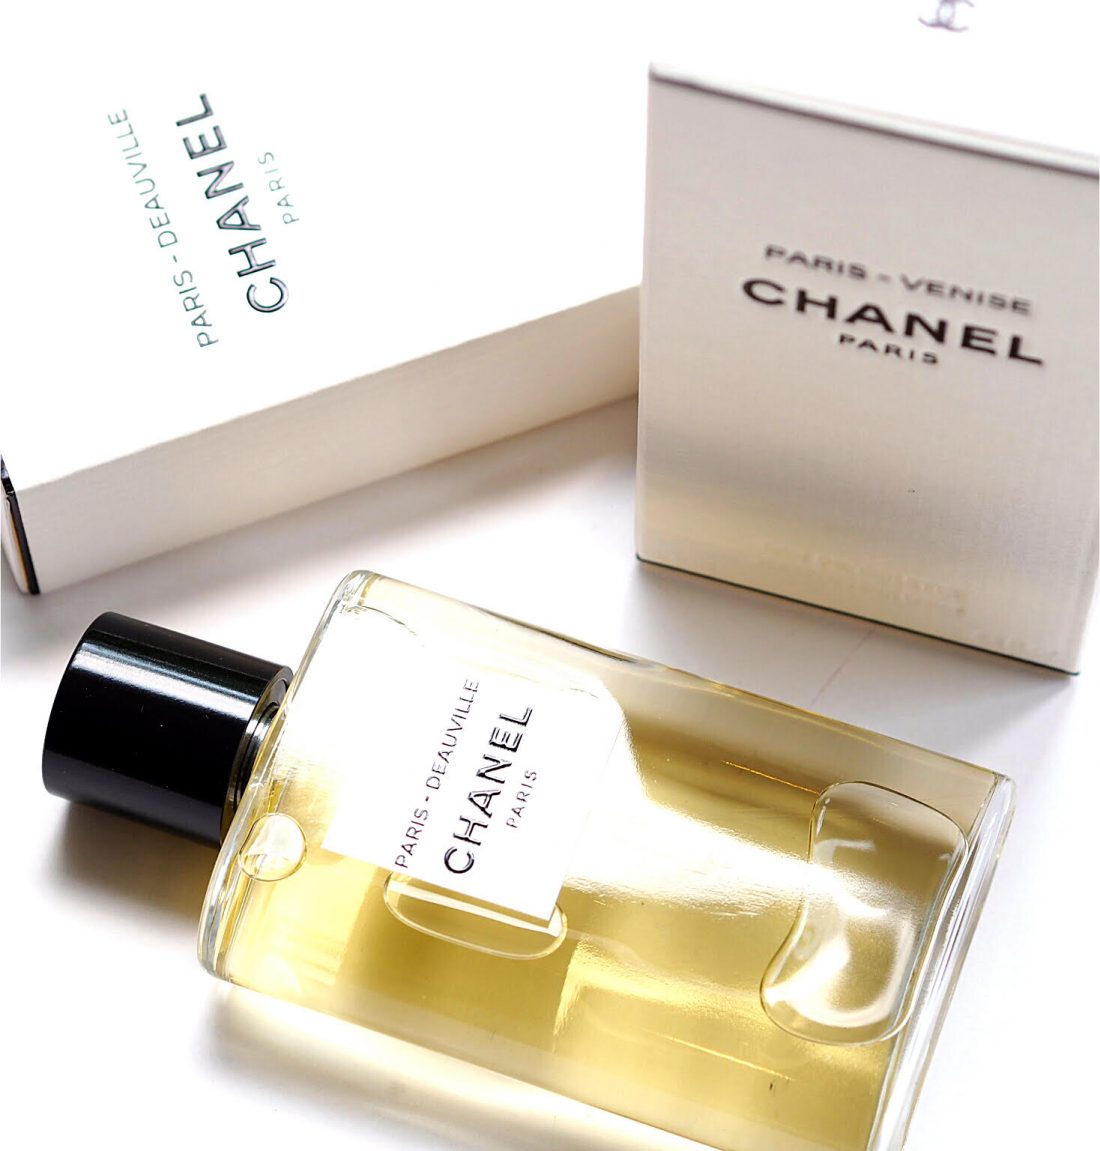 6pc SET of CHANEL LES EAUX PARIS 0.05oz / 1.5ml Ea EDT Spray Perfume Samples  NEW